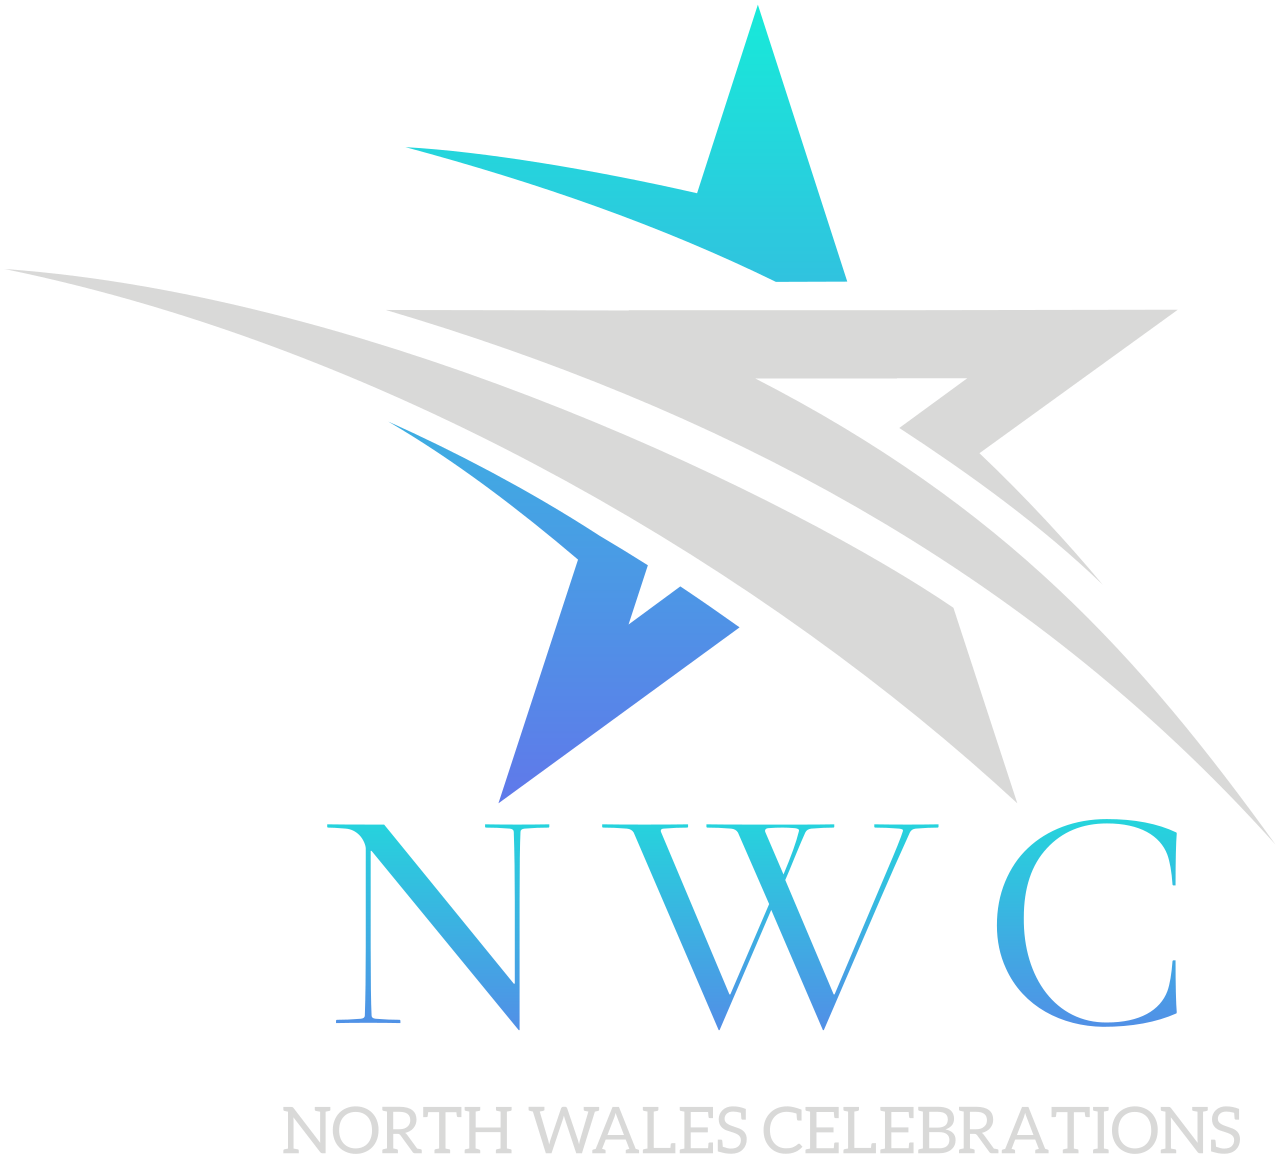 Nwc's logo